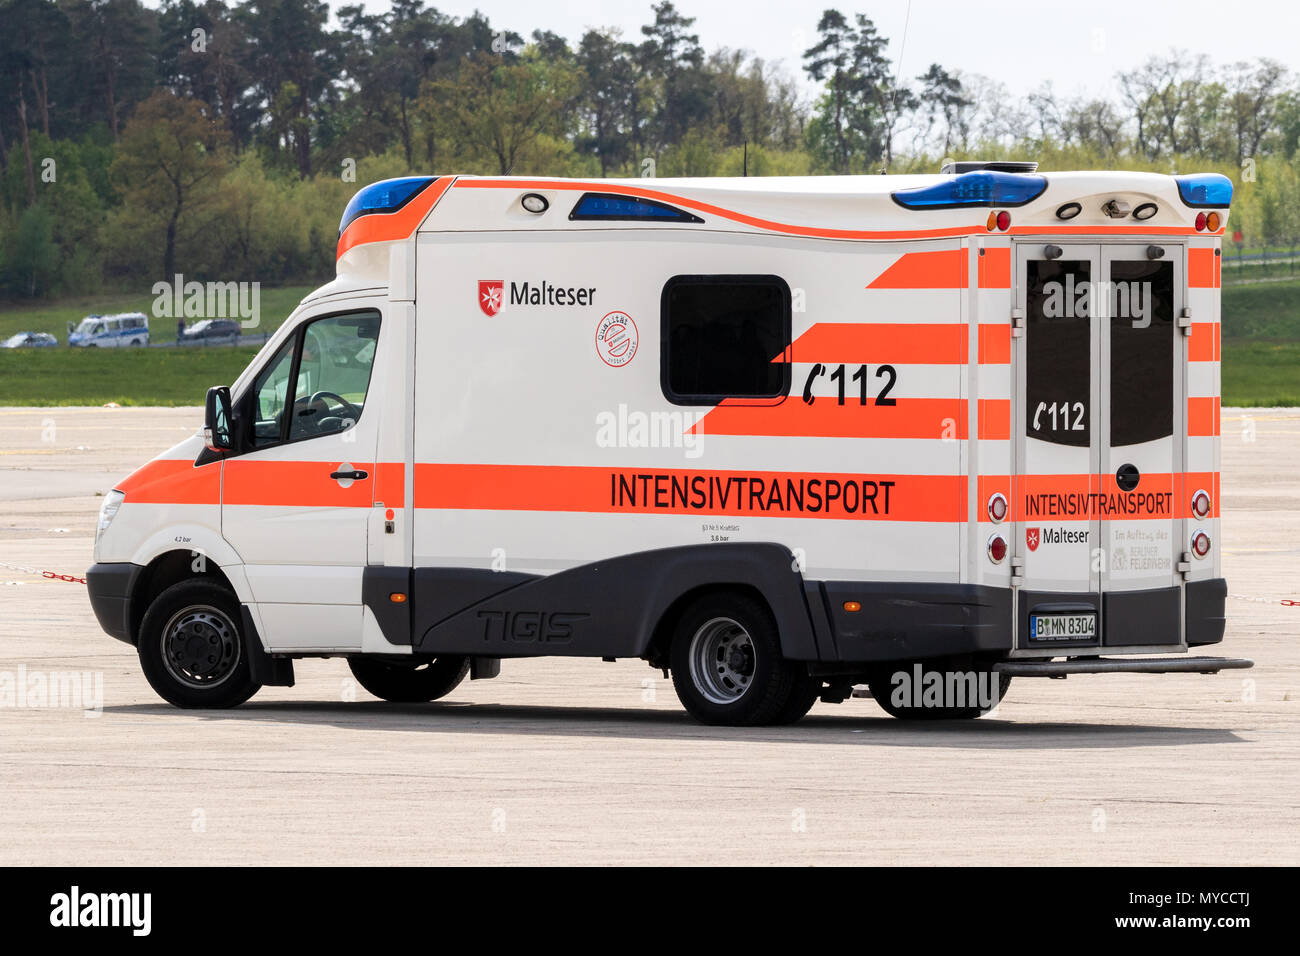 Berlino, Germania - Apr 27, 2018: Malteser mediche di emergenza ambulanza del veicolo in servizio all'aeroporto Berlin-Schonefeld. Foto Stock